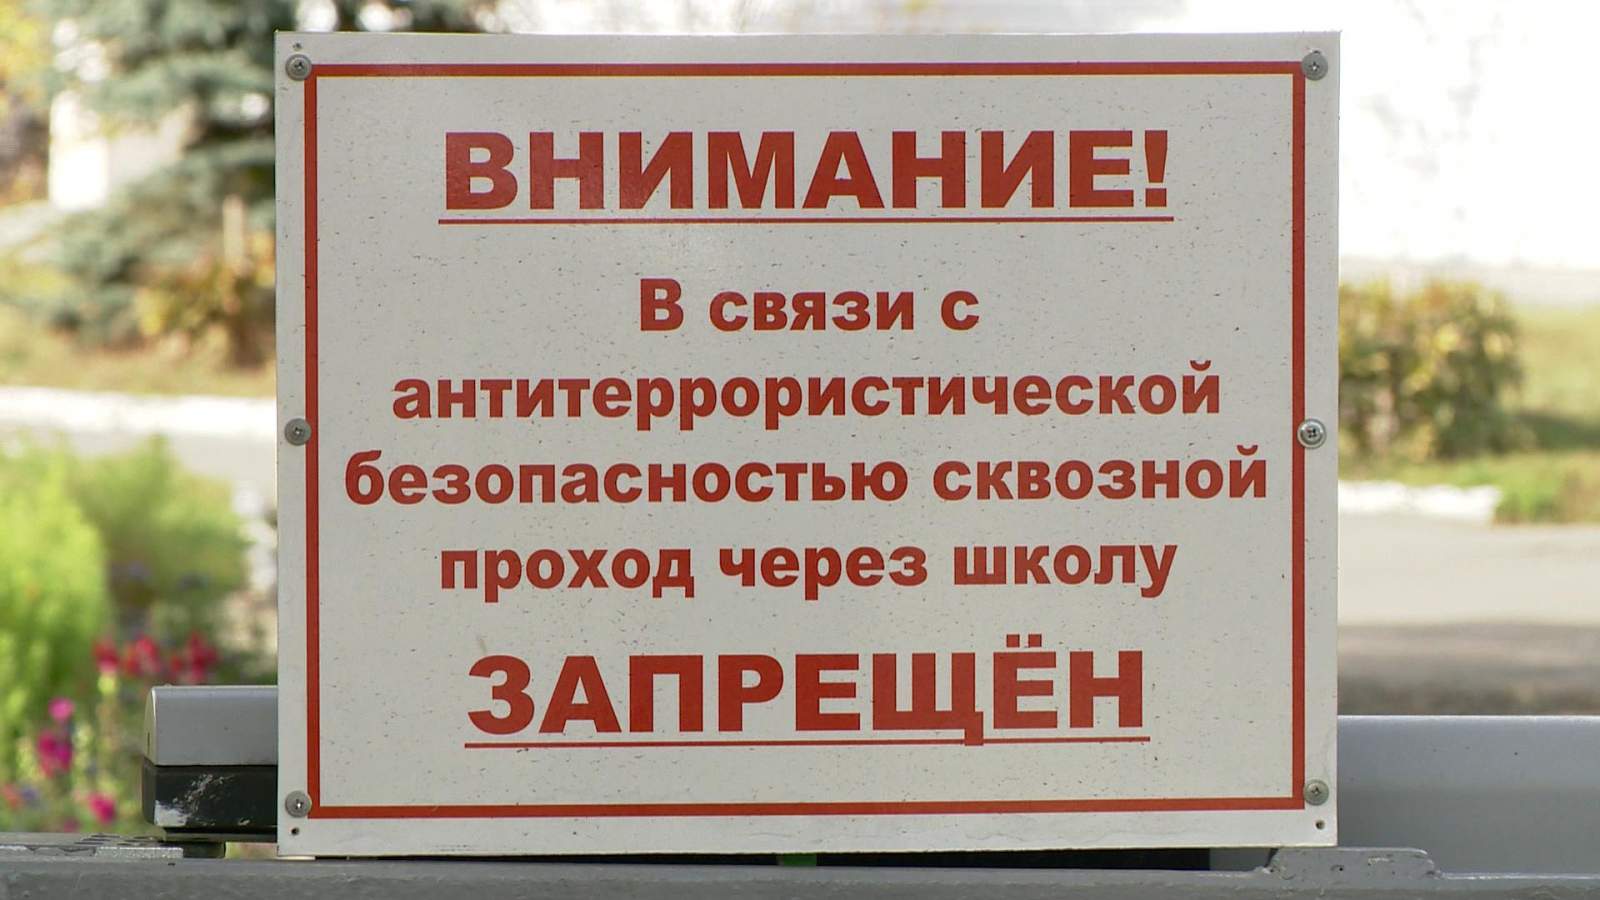 Проход через территорию школы запрещен